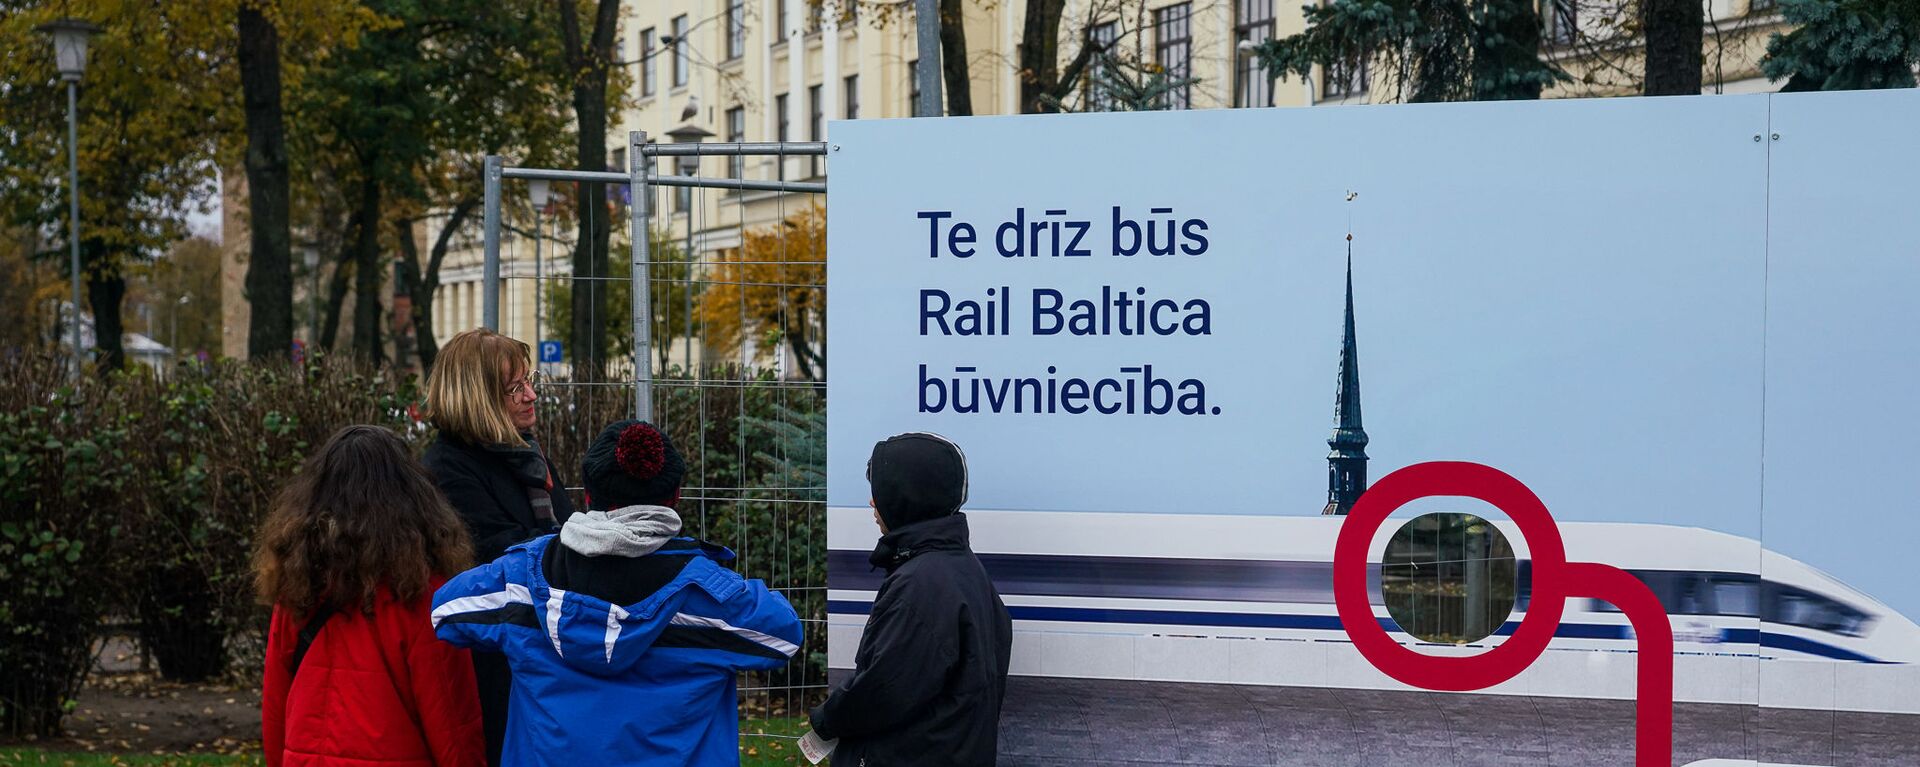 Презентация плана строительства Центрального рижского узла новой железной дороги Rail Baltica - Sputnik Латвия, 1920, 13.10.2021